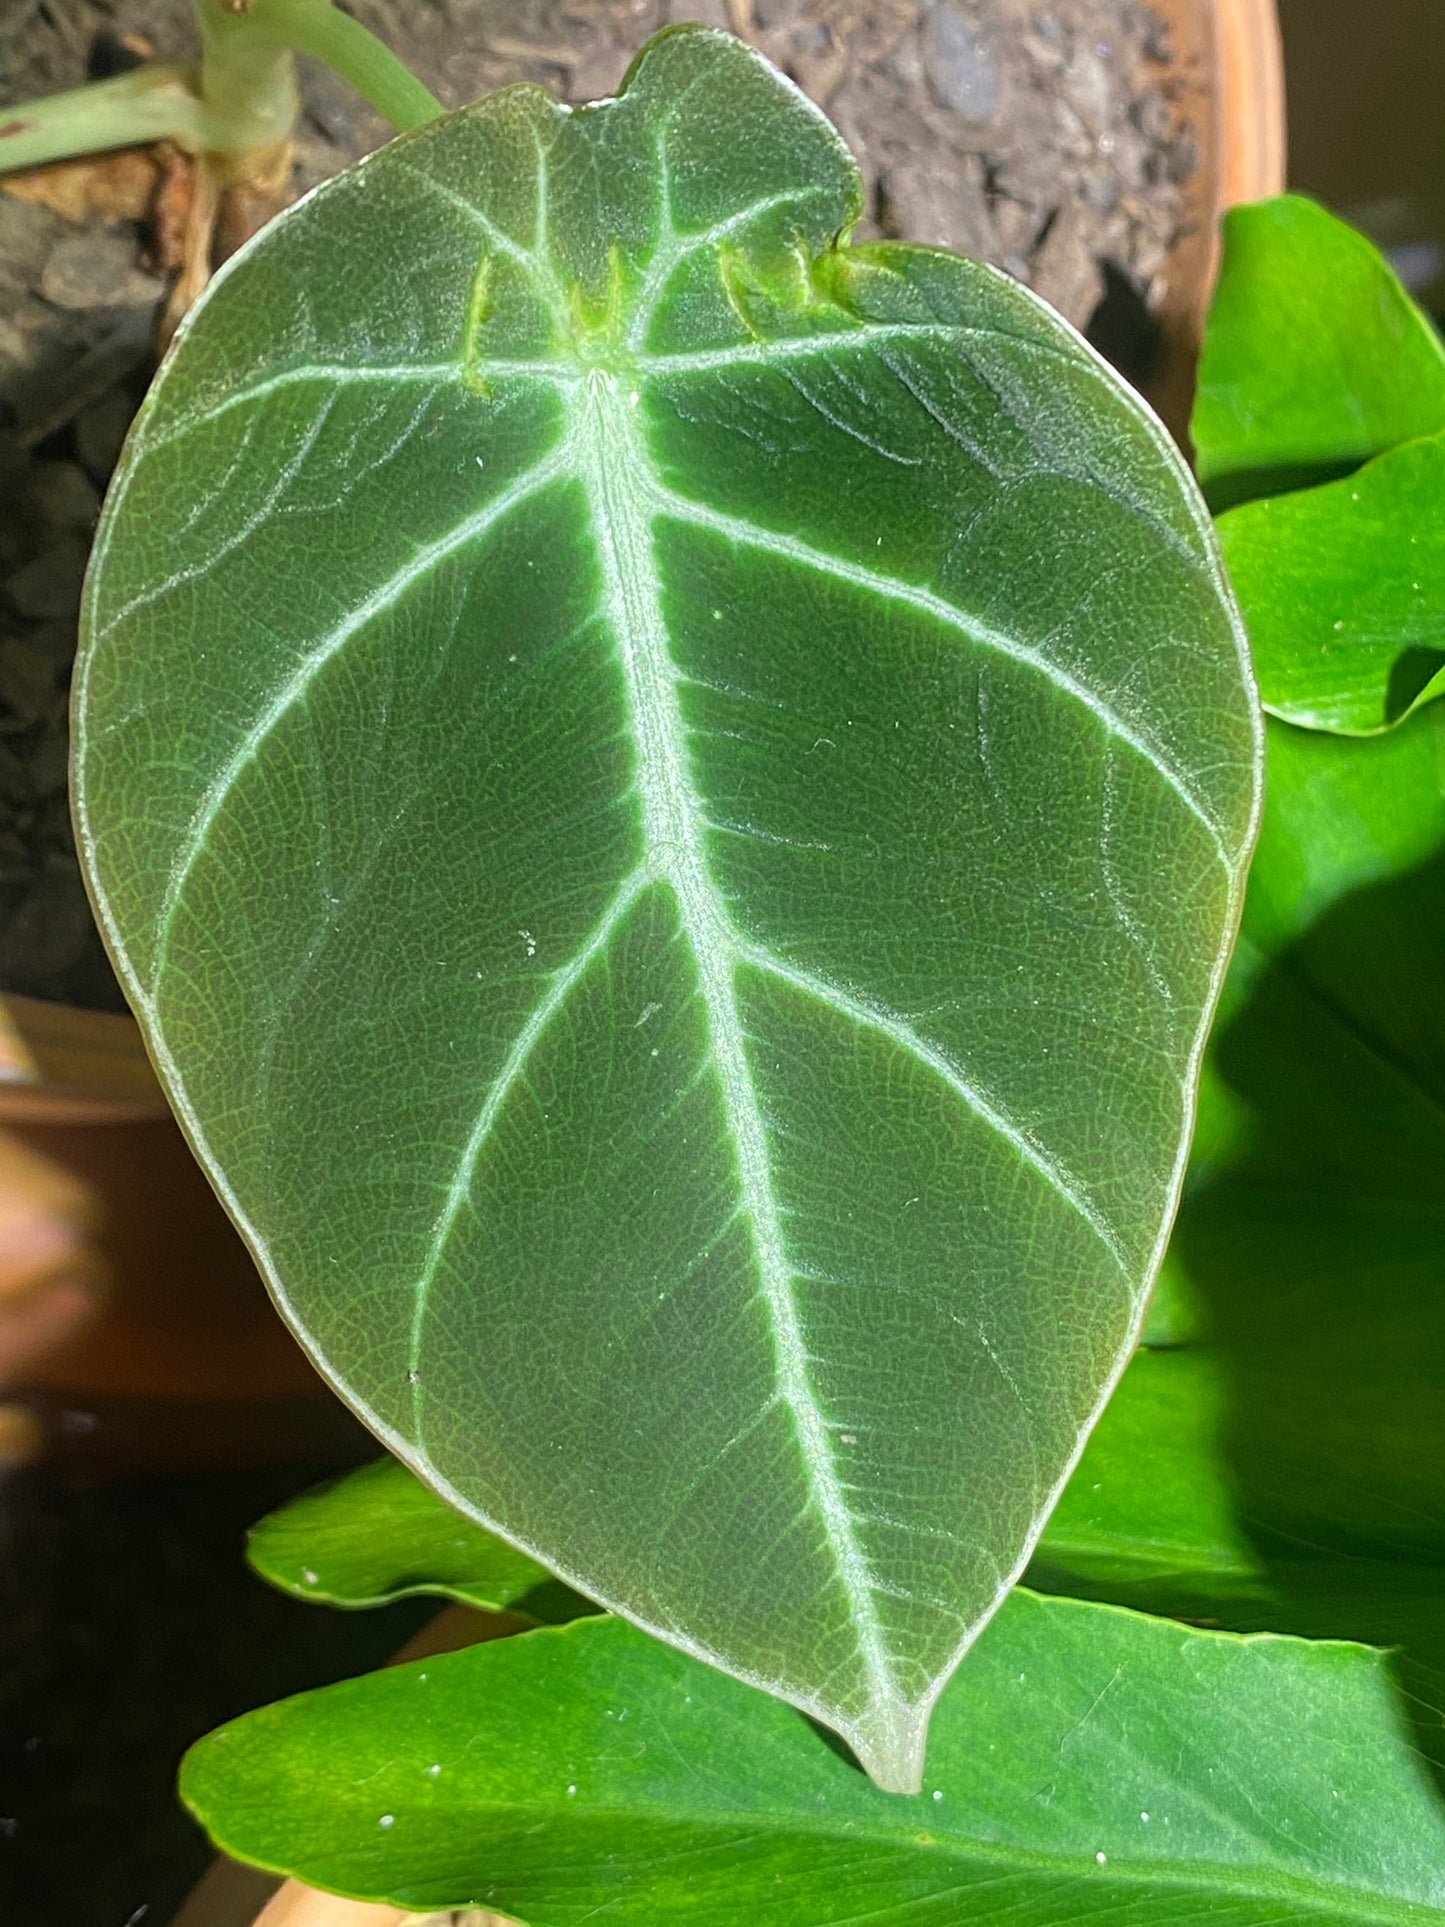 Black Velvet alocasia, green leaves 